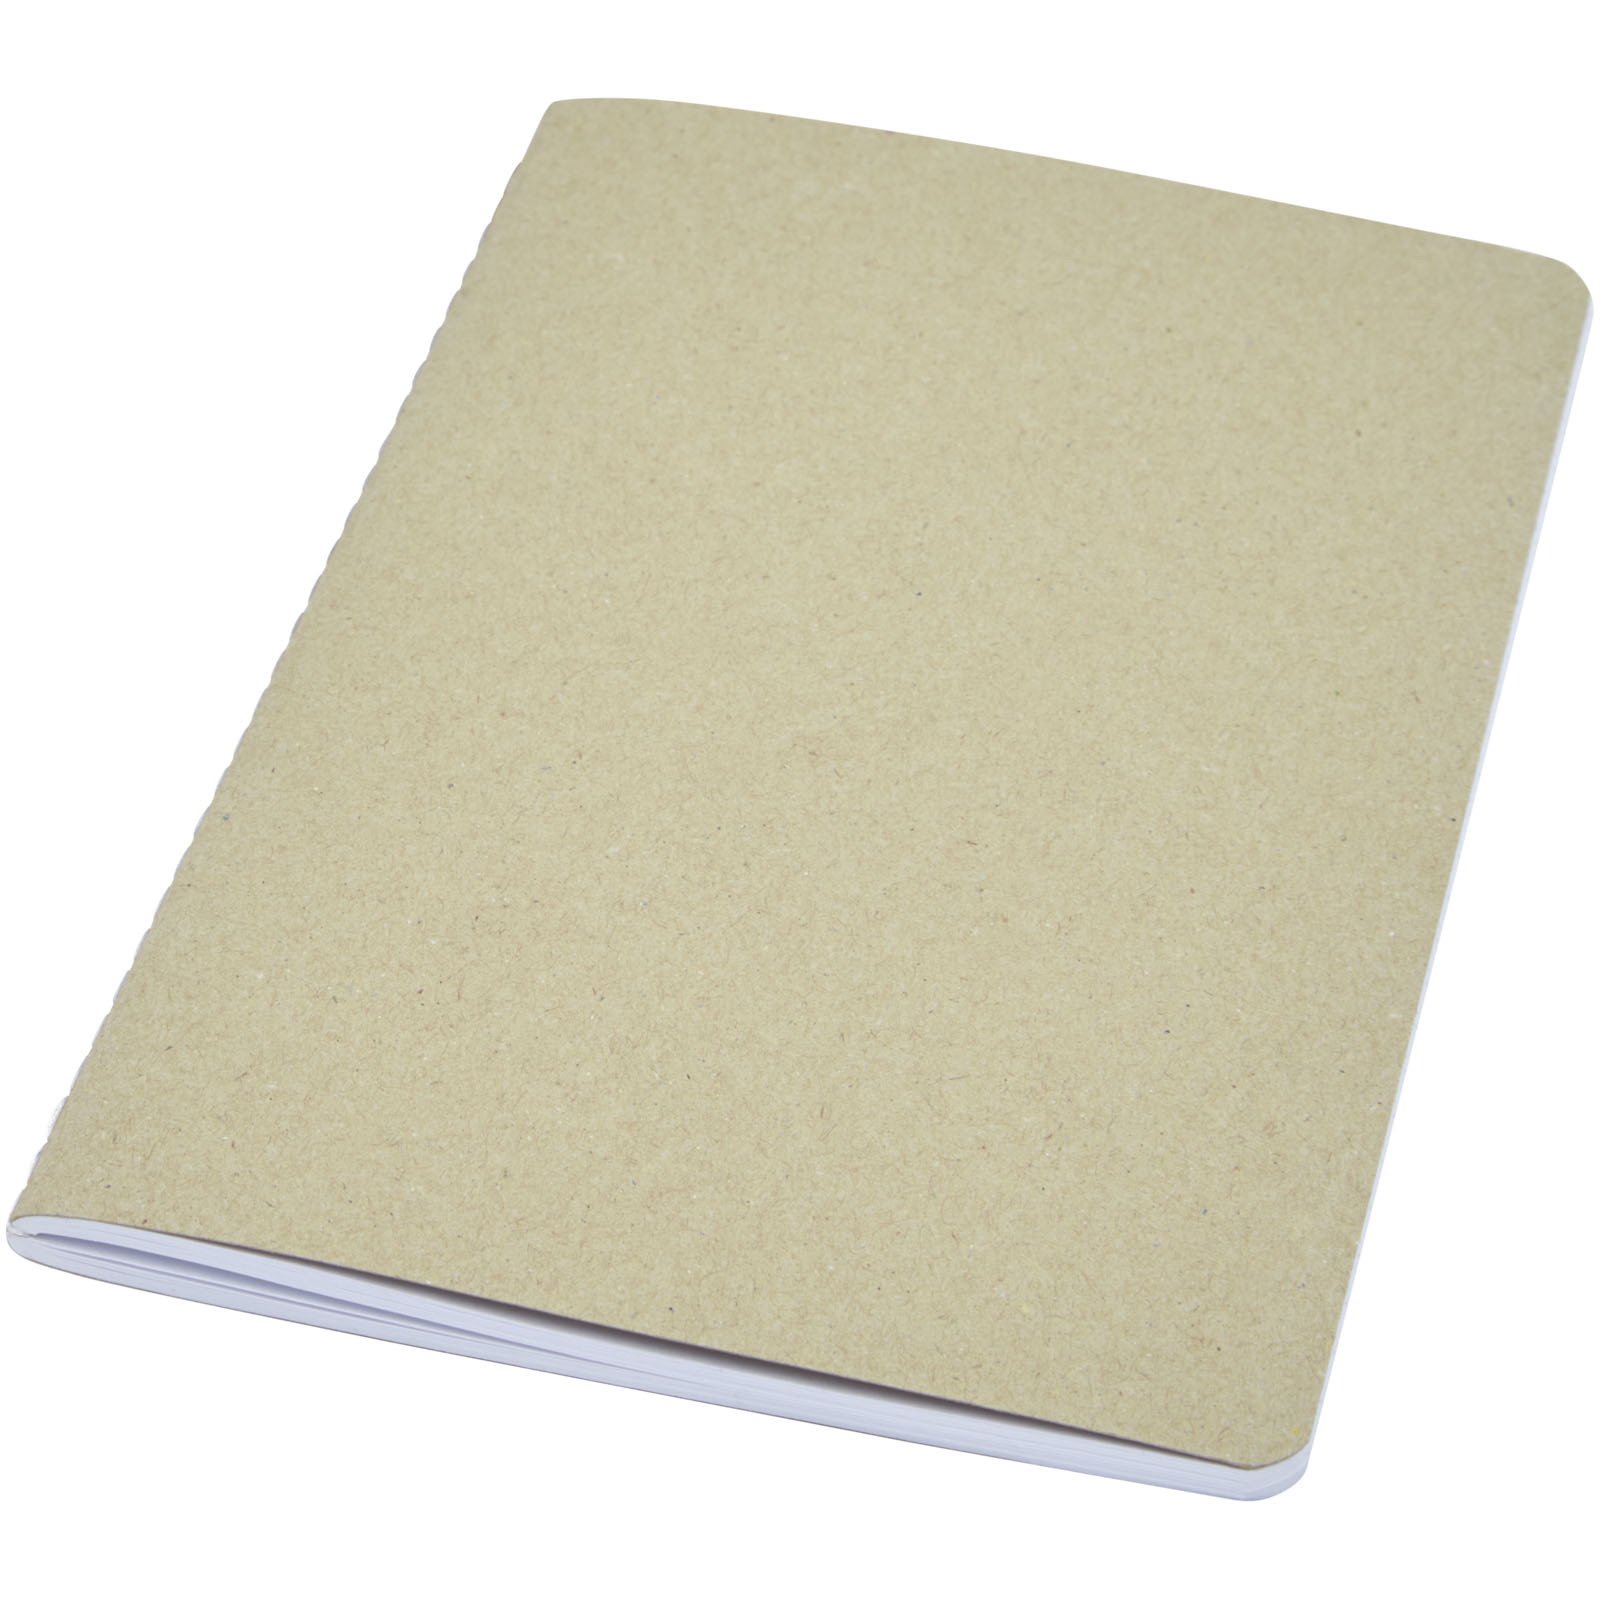 Cuaderno con Cubierta de Cartón Reciclado - Palomares del Río